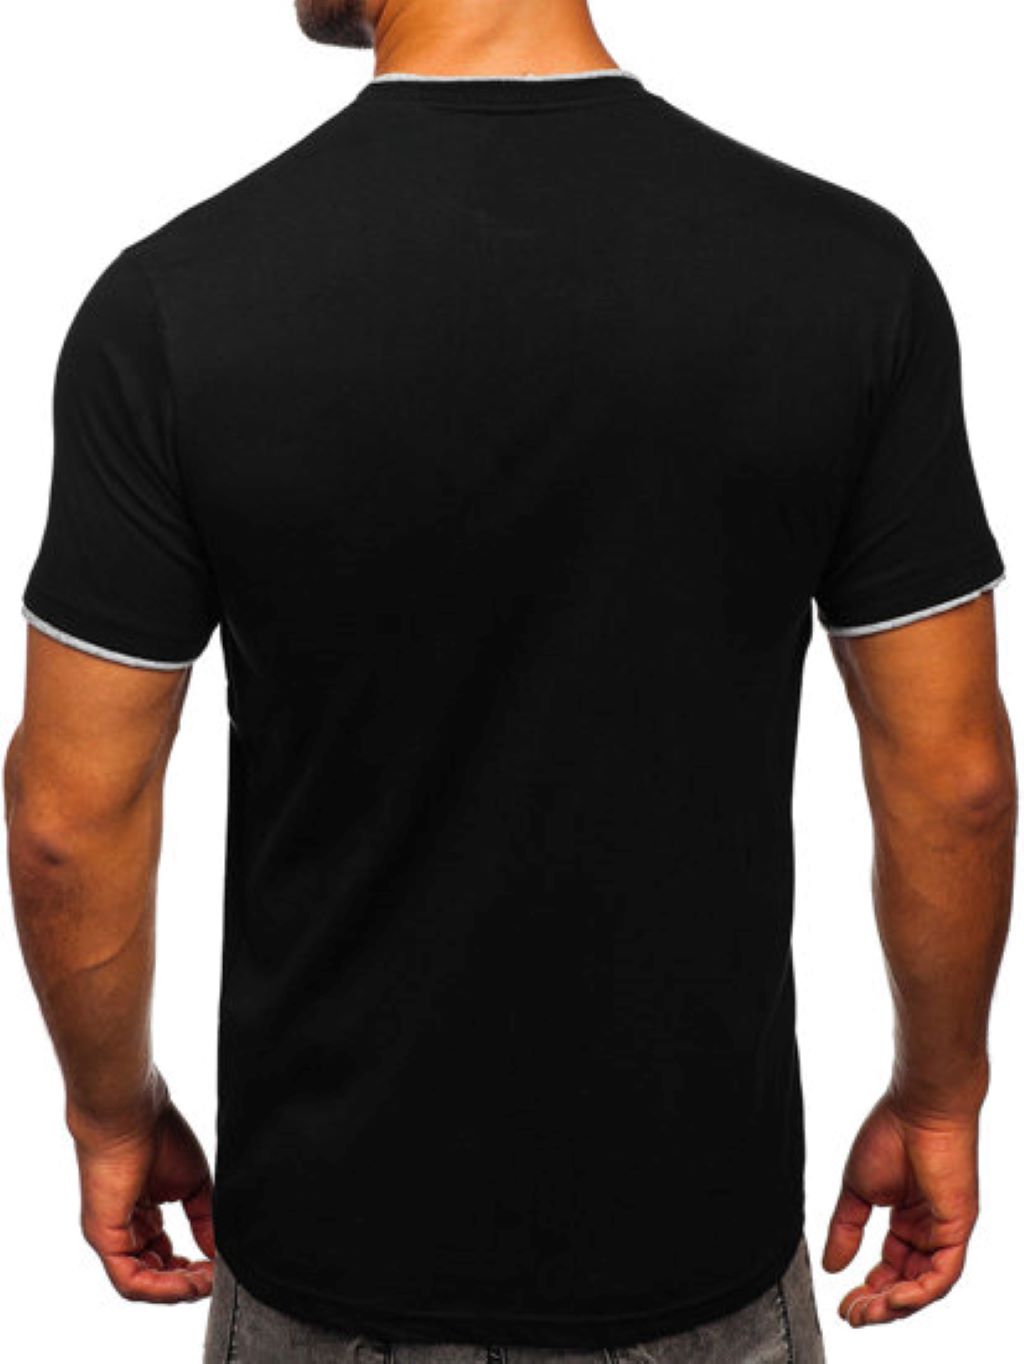 czarnyT-shirt męski zdjęcie 2